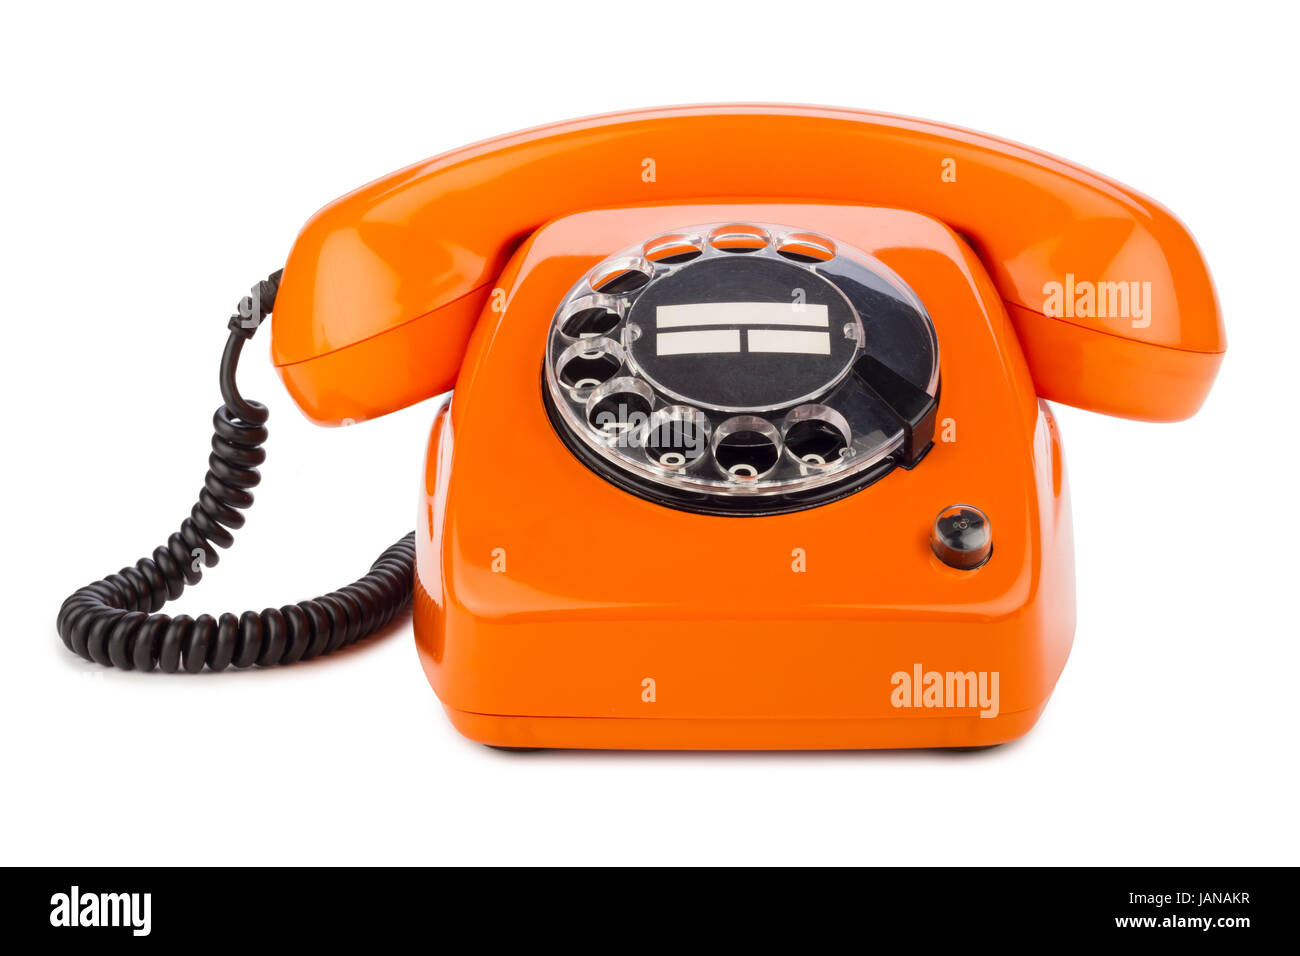 1960er Jahre Wählscheibe Old Fashioned Vintage schnurgebundene Telefon Home 